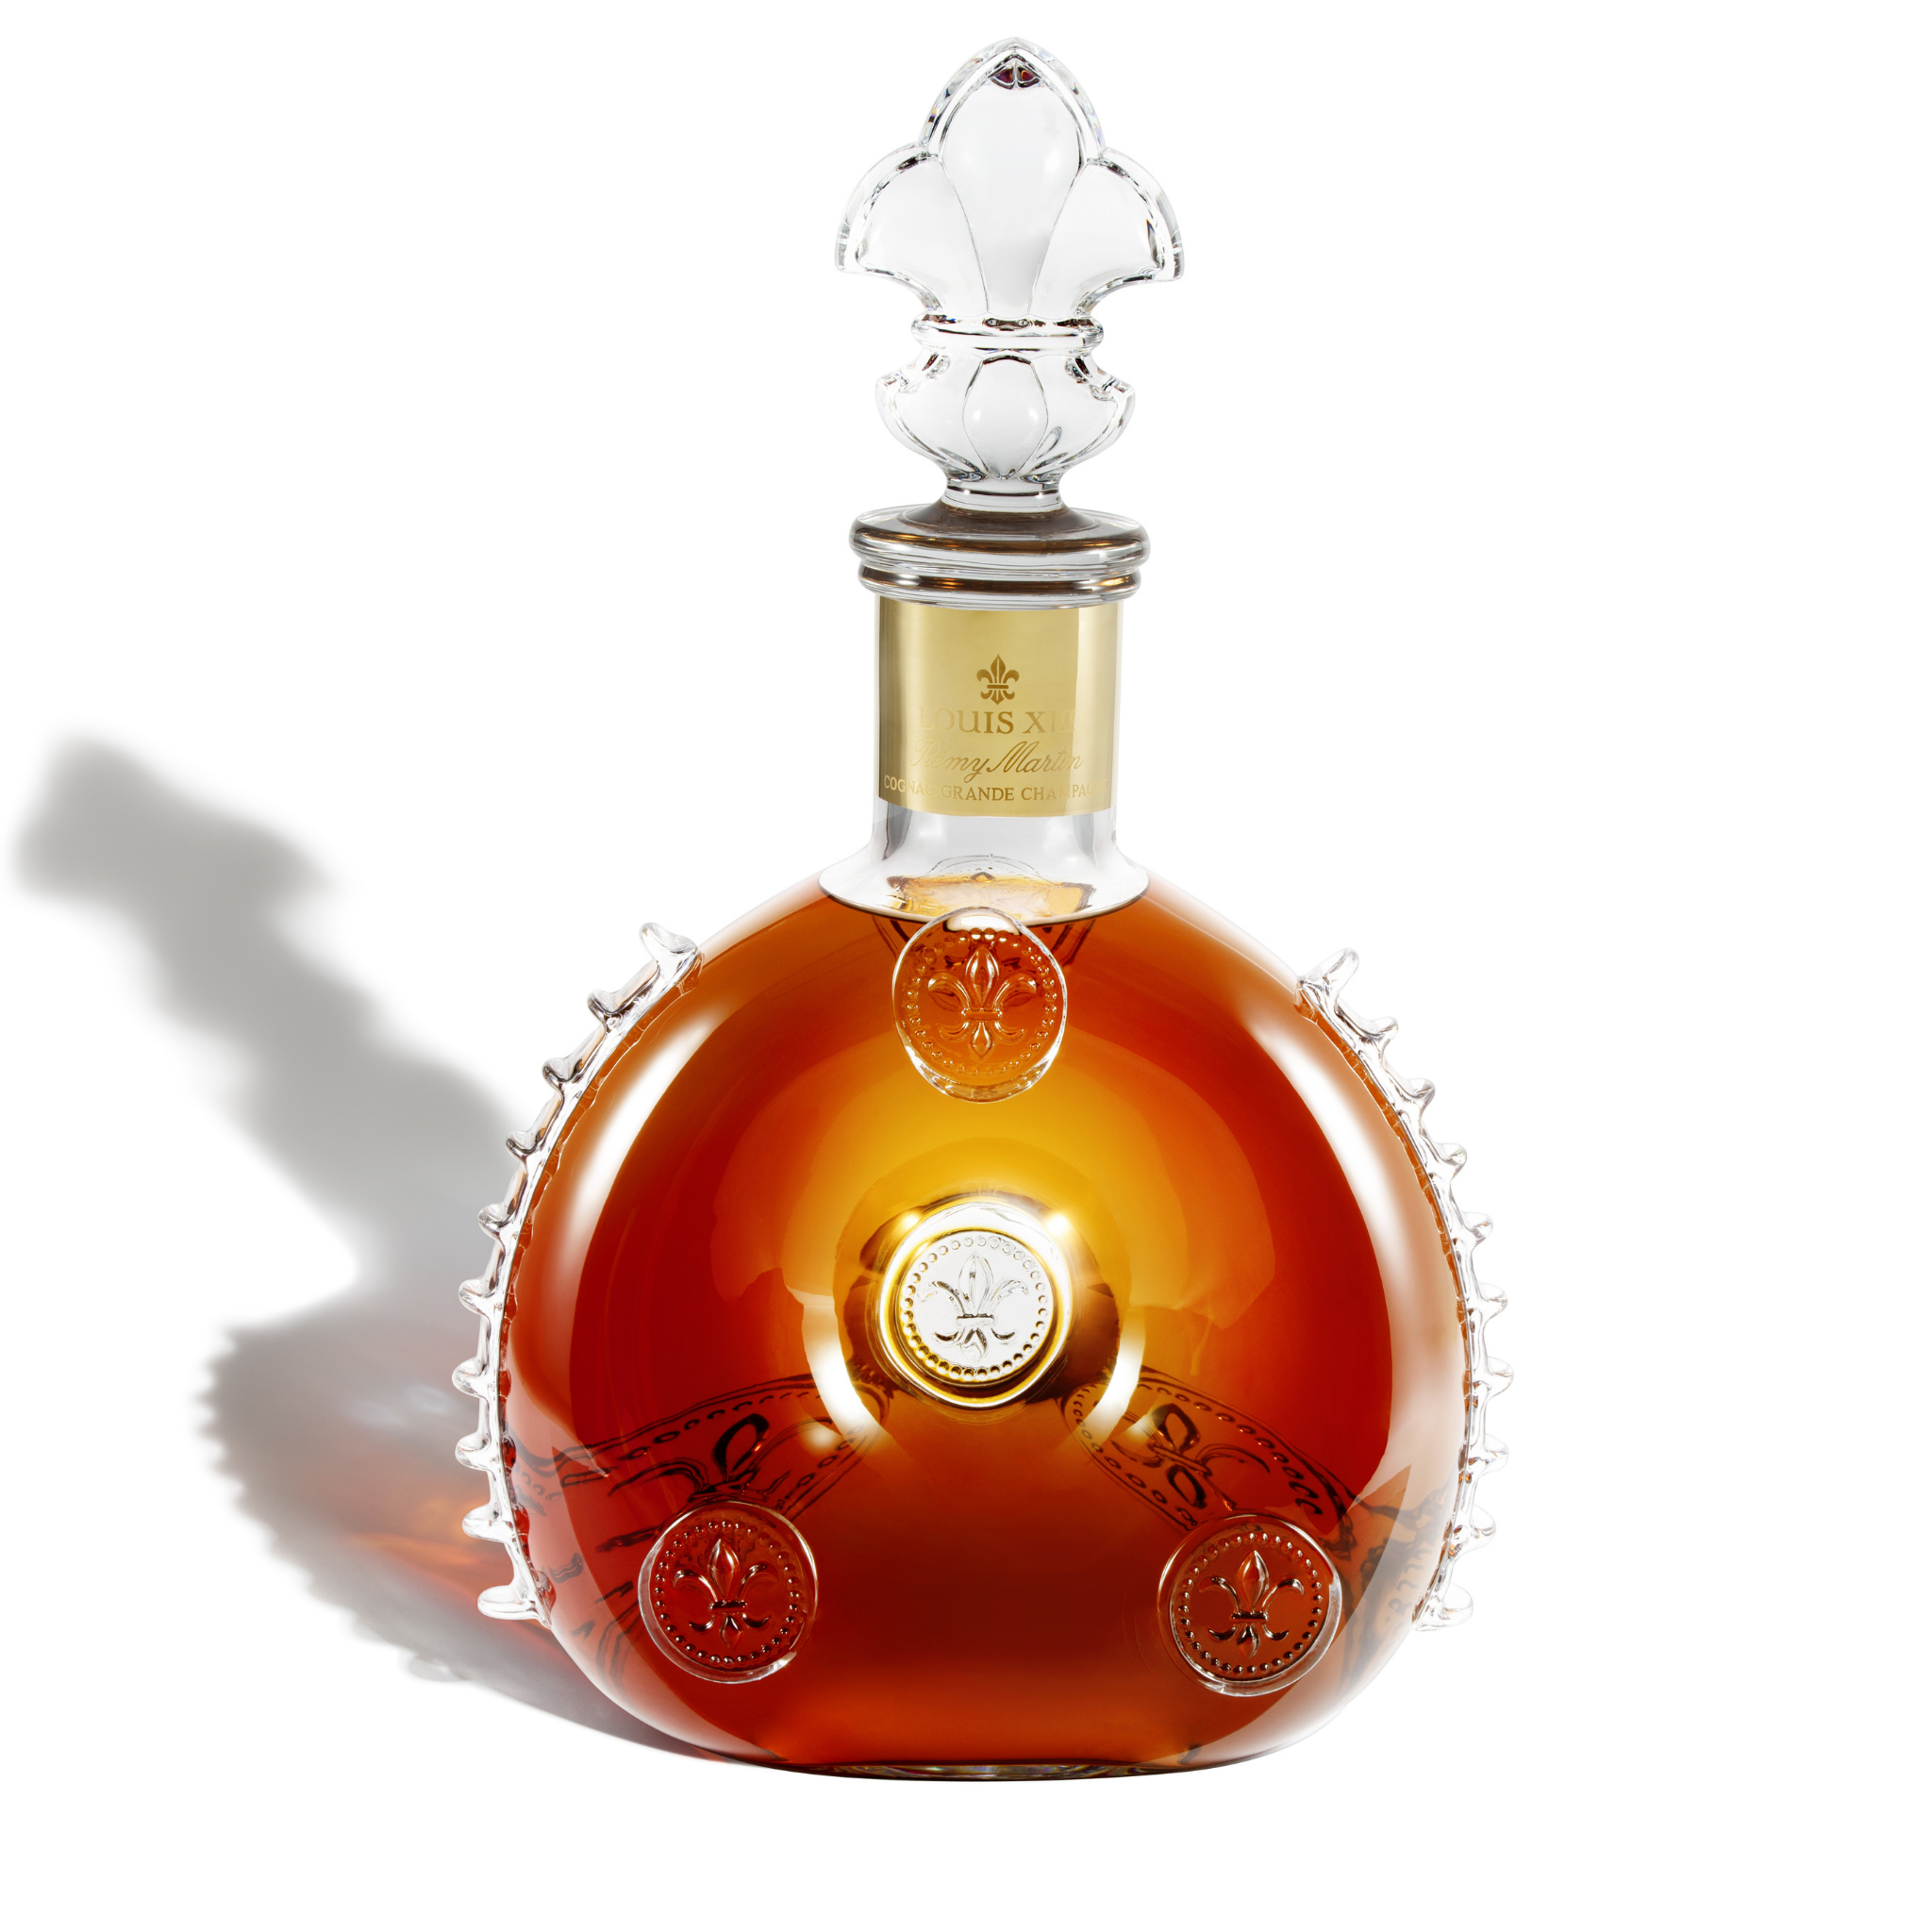 LOUIS XIII - Cognac - Boozeat